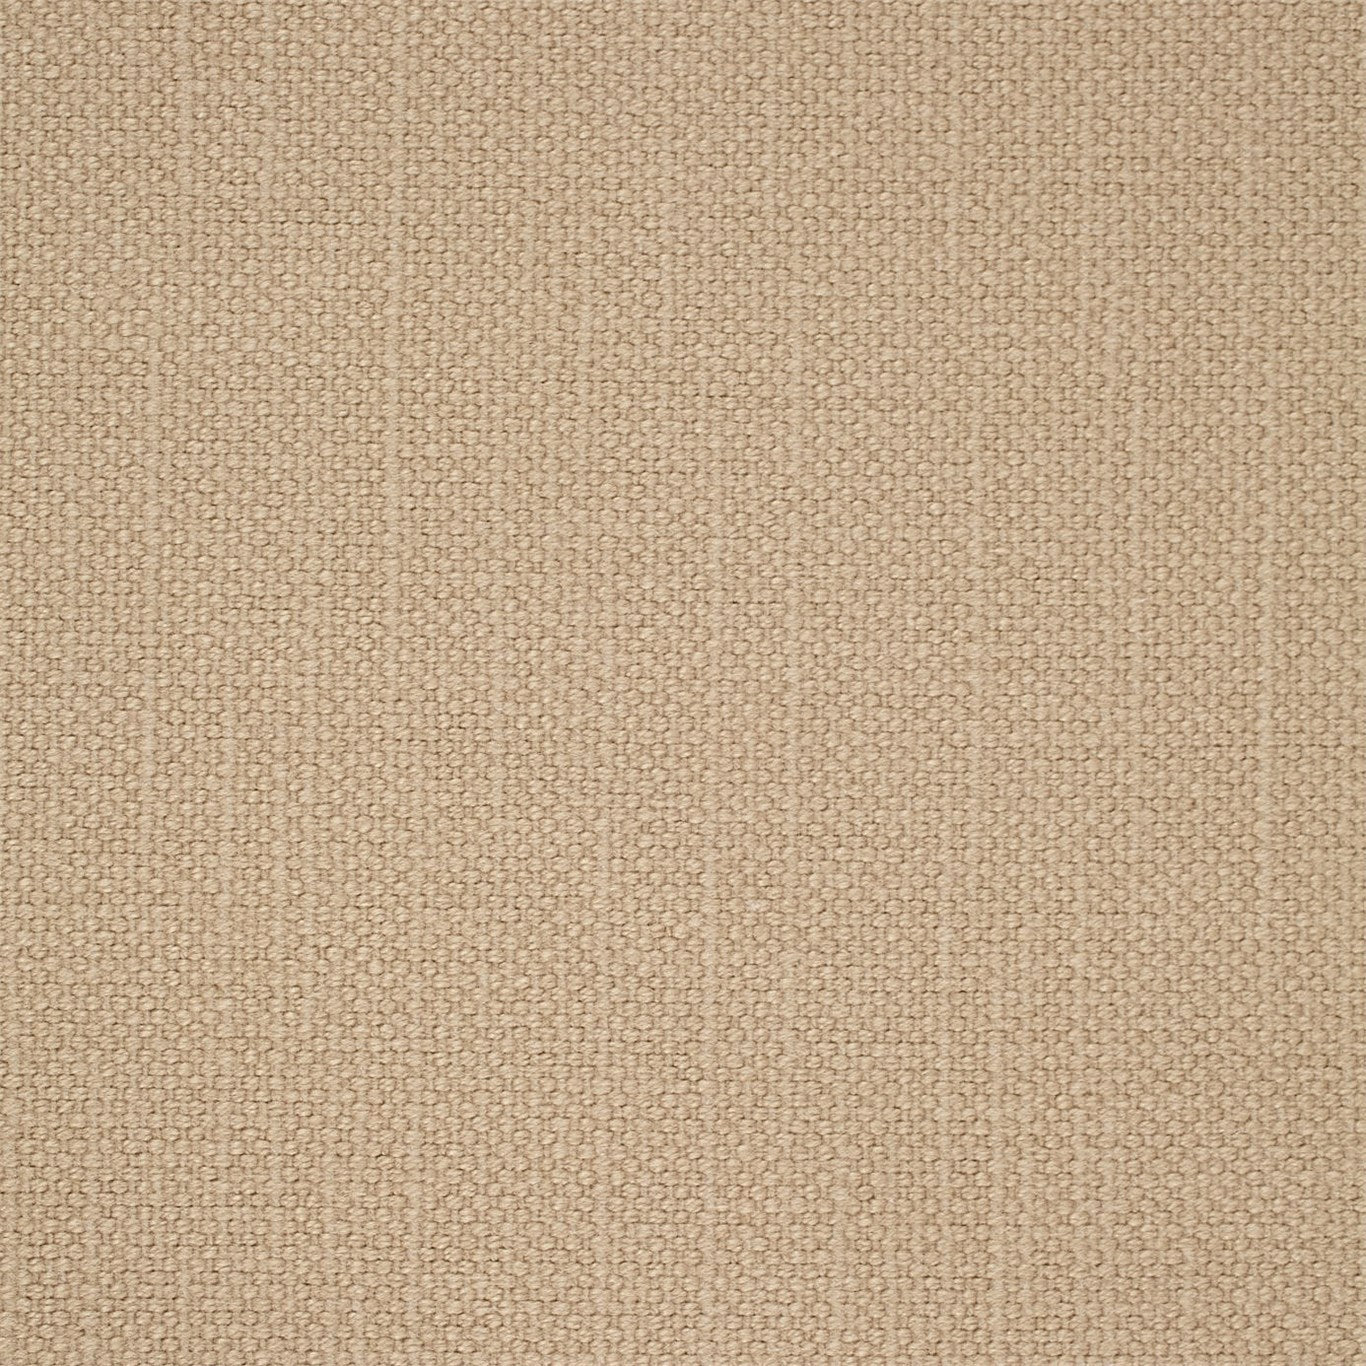 Arley Fabric by Sanderson - DALY245807 - Buff